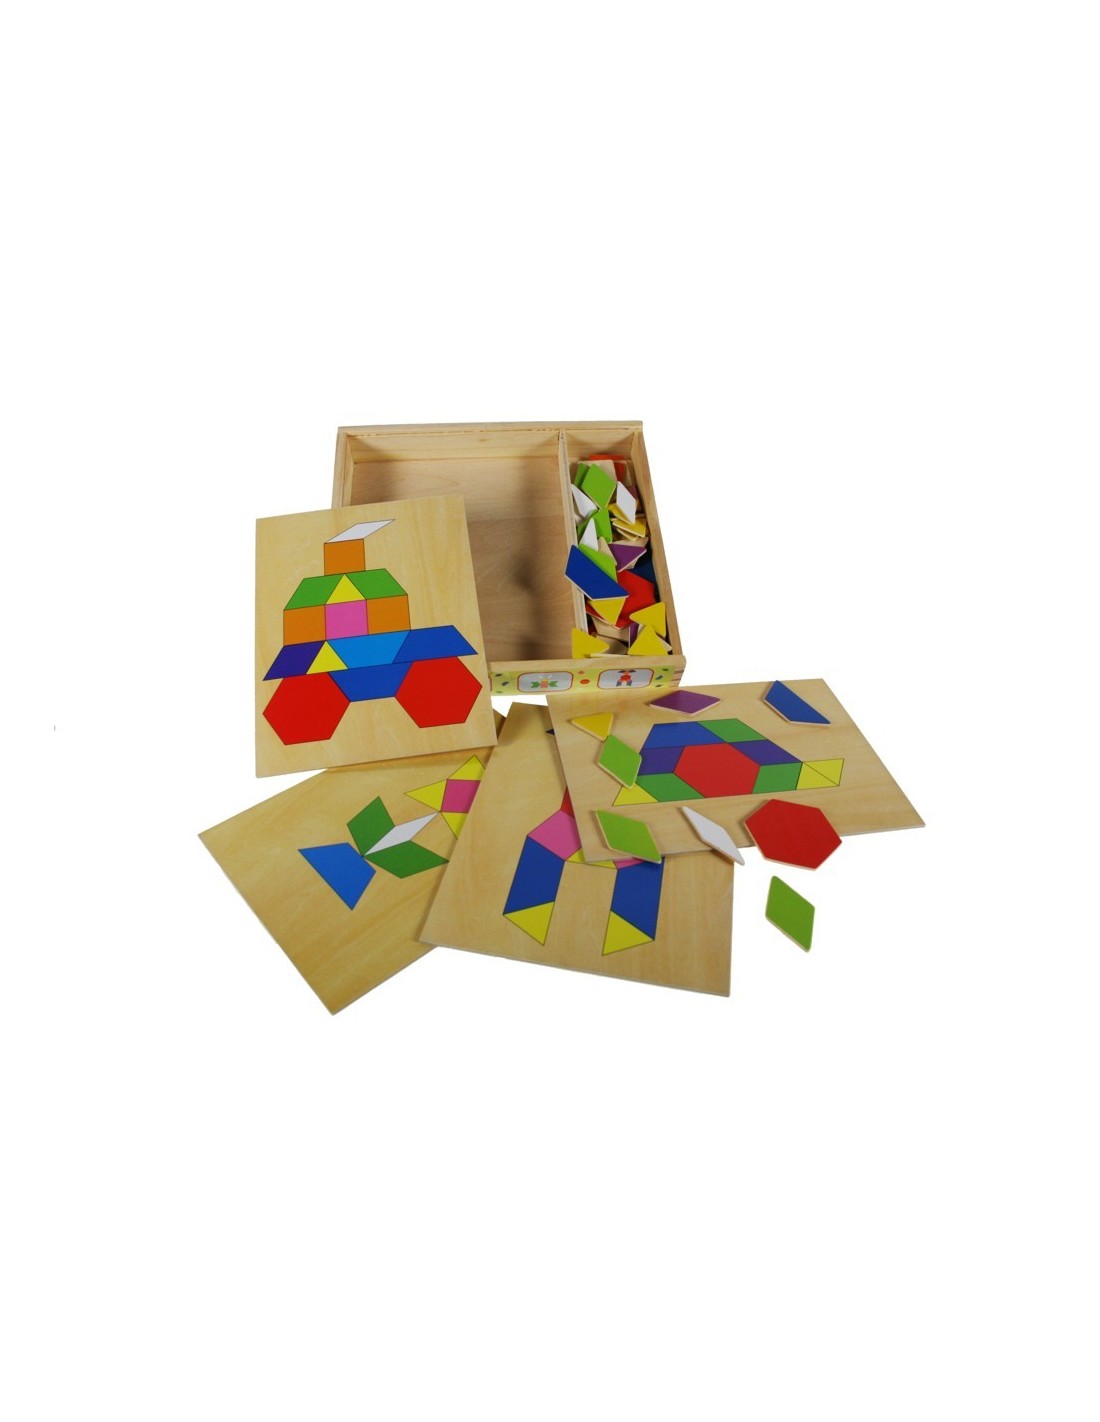 Puzzle mosaico multicolor en caja de madera con varias composiciones juego clásico infantil